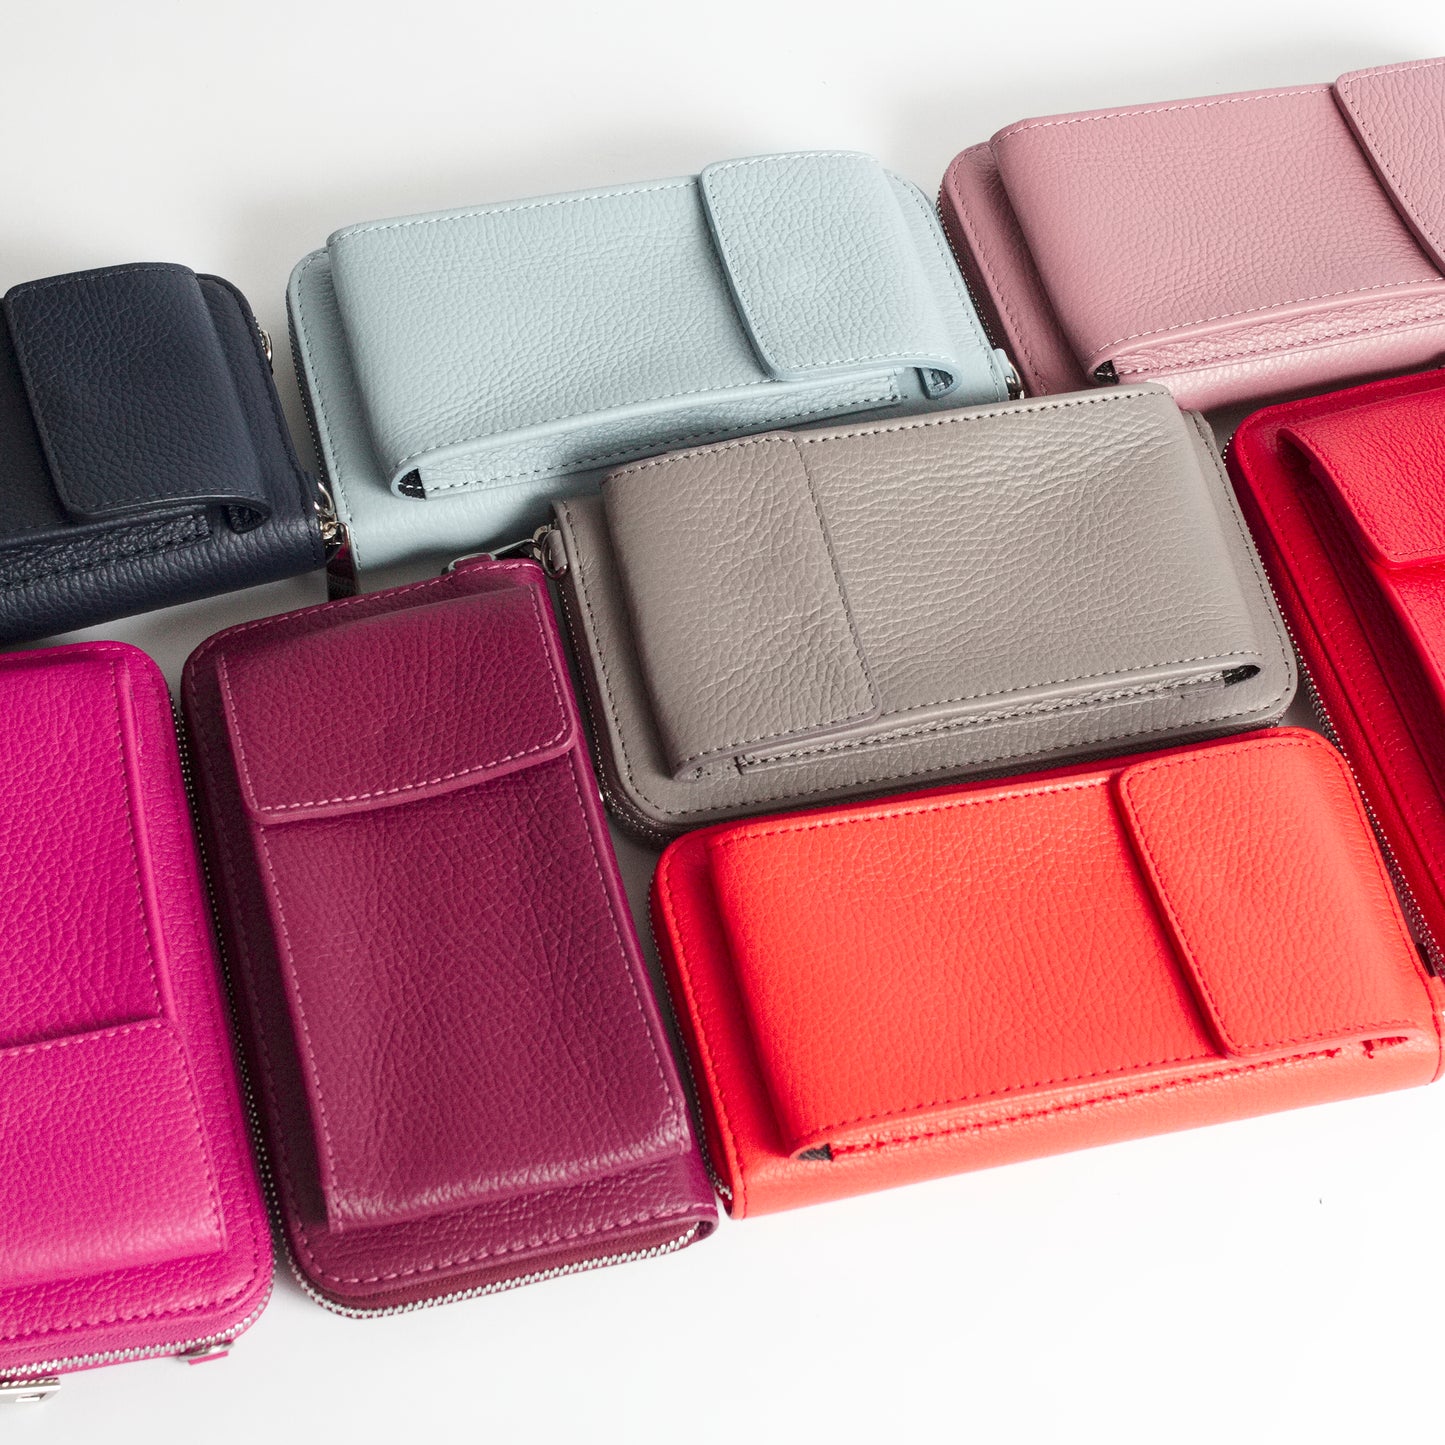 Esperia All Colors Italian Leather Accessories Solo Perché Bags